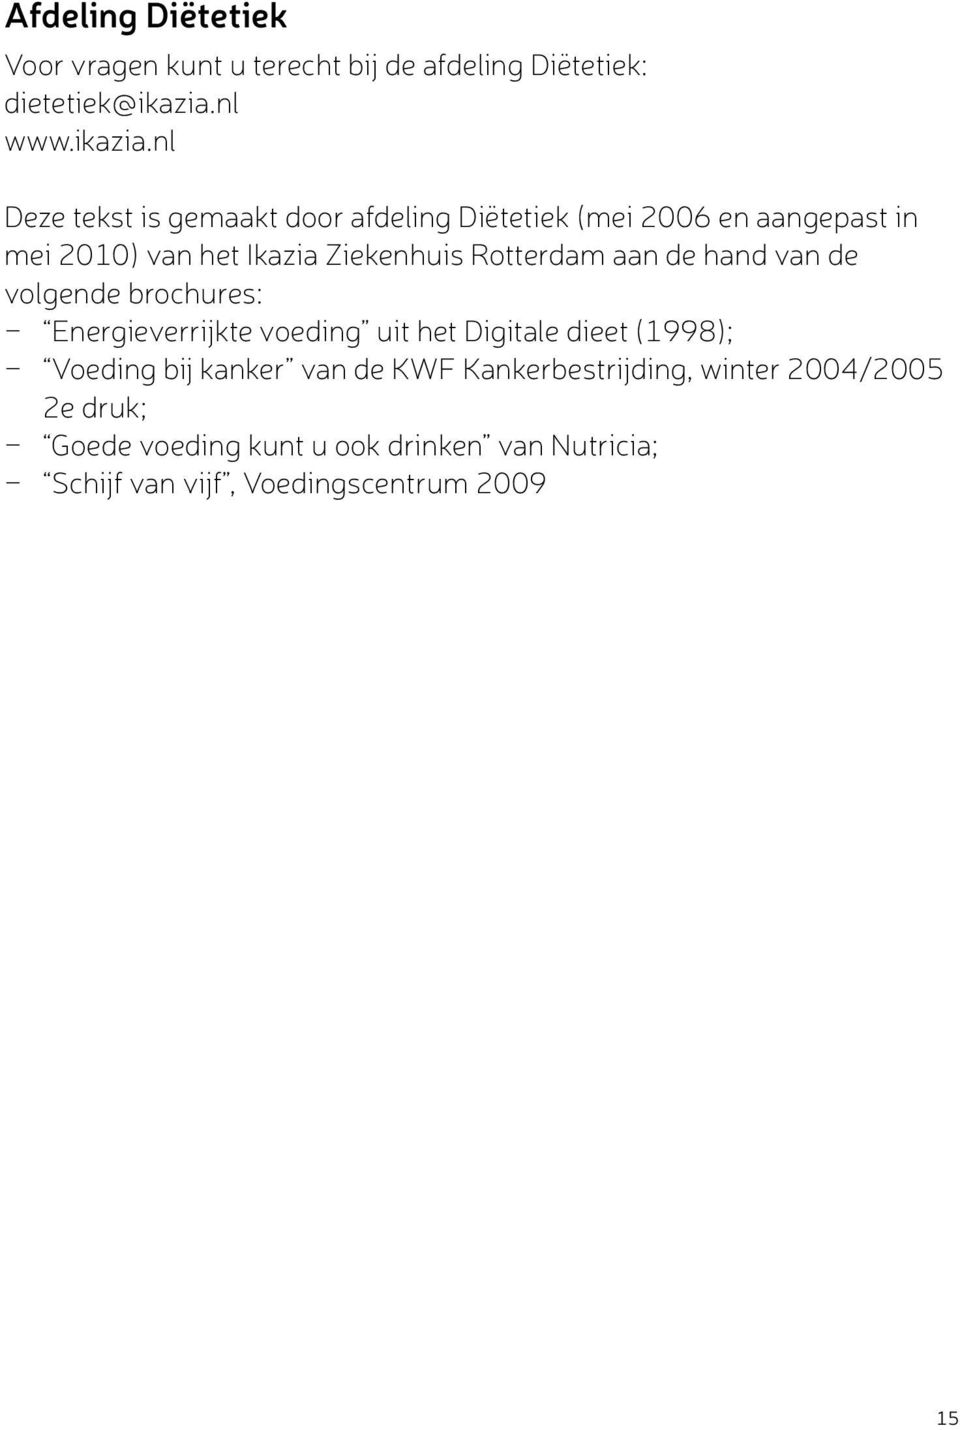 nl Deze tekst is gemaakt door afdeling Diëtetiek (mei 2006 en aangepast in mei 2010) van het Ikazia Ziekenhuis Rotterdam